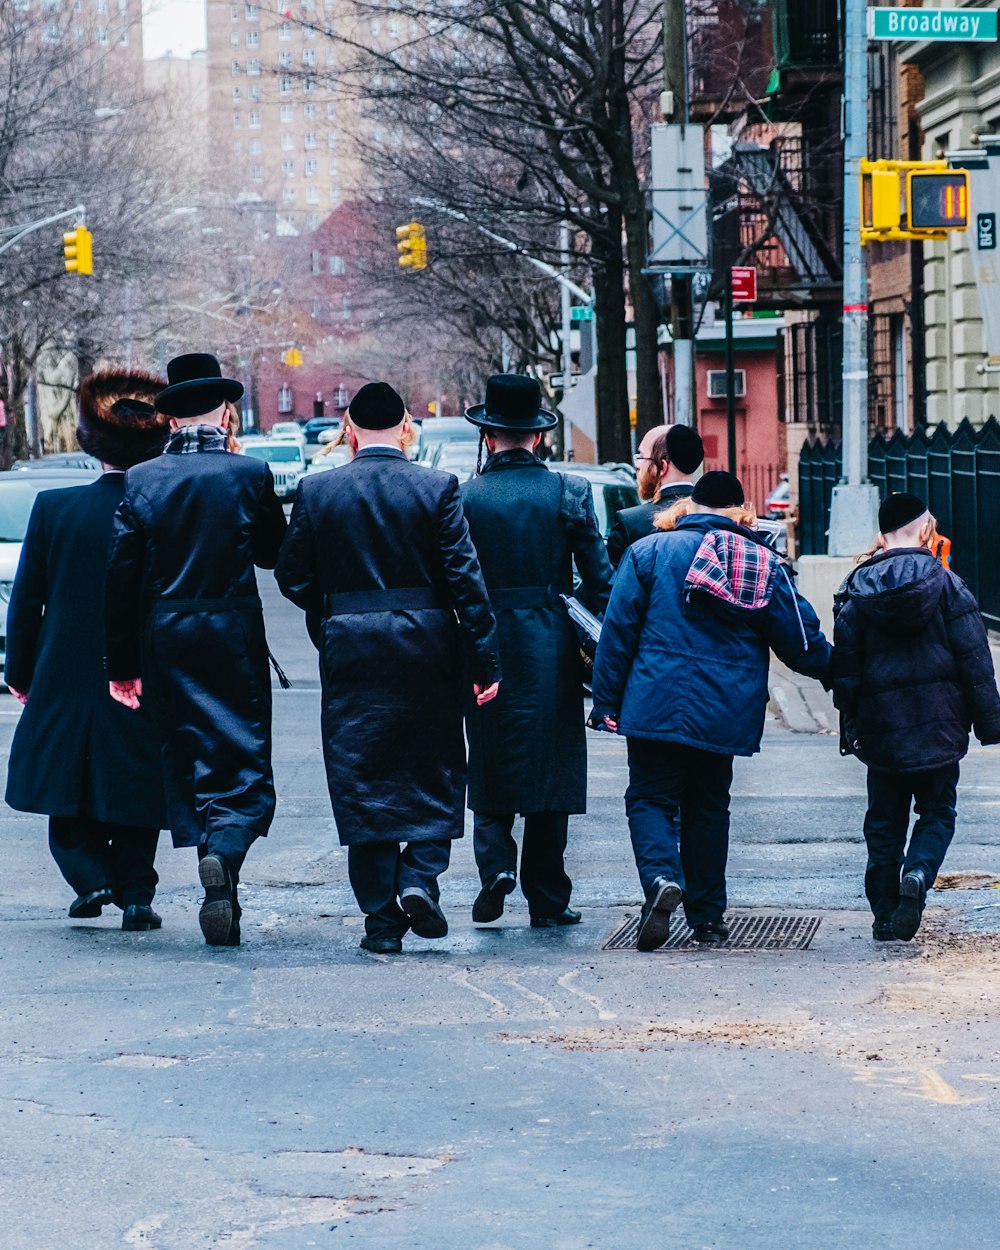 Gruppe von Männern in schwarzem Mantel, die tagsüber auf dem Bürgersteig spazieren gehen